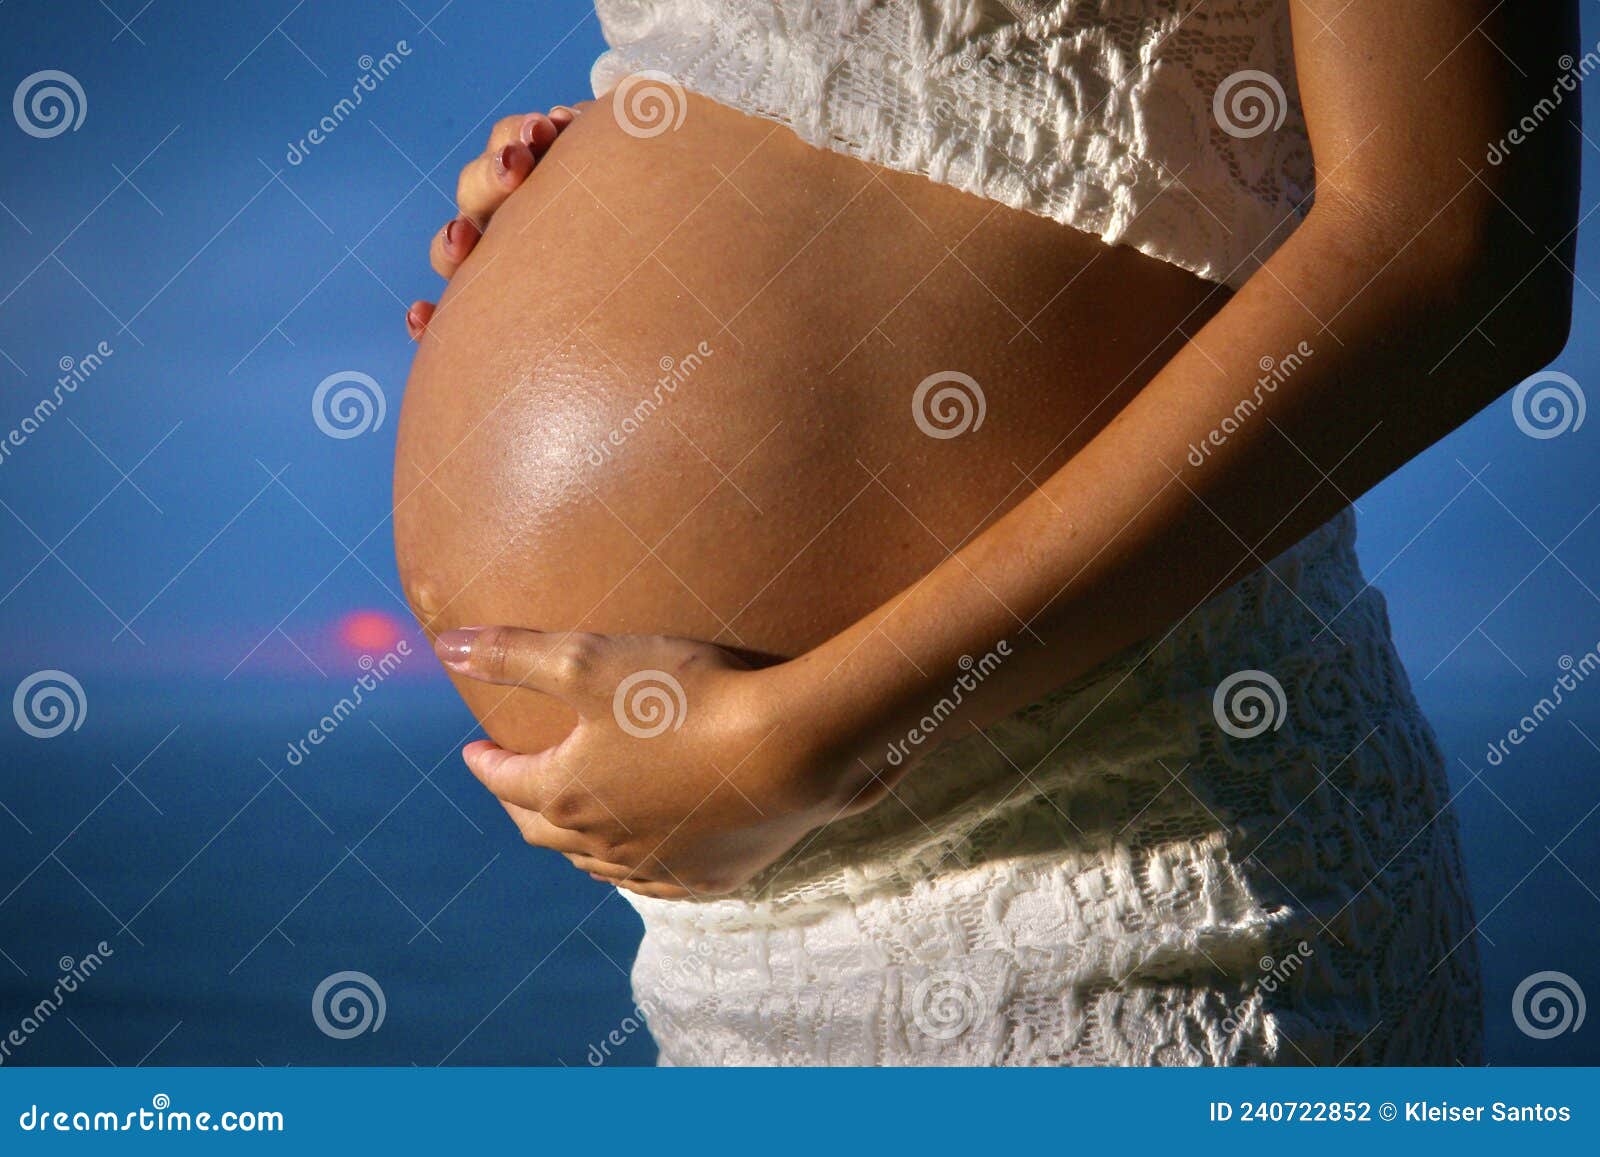 孕妇手摸肚子照片图片下载 - 觅知网